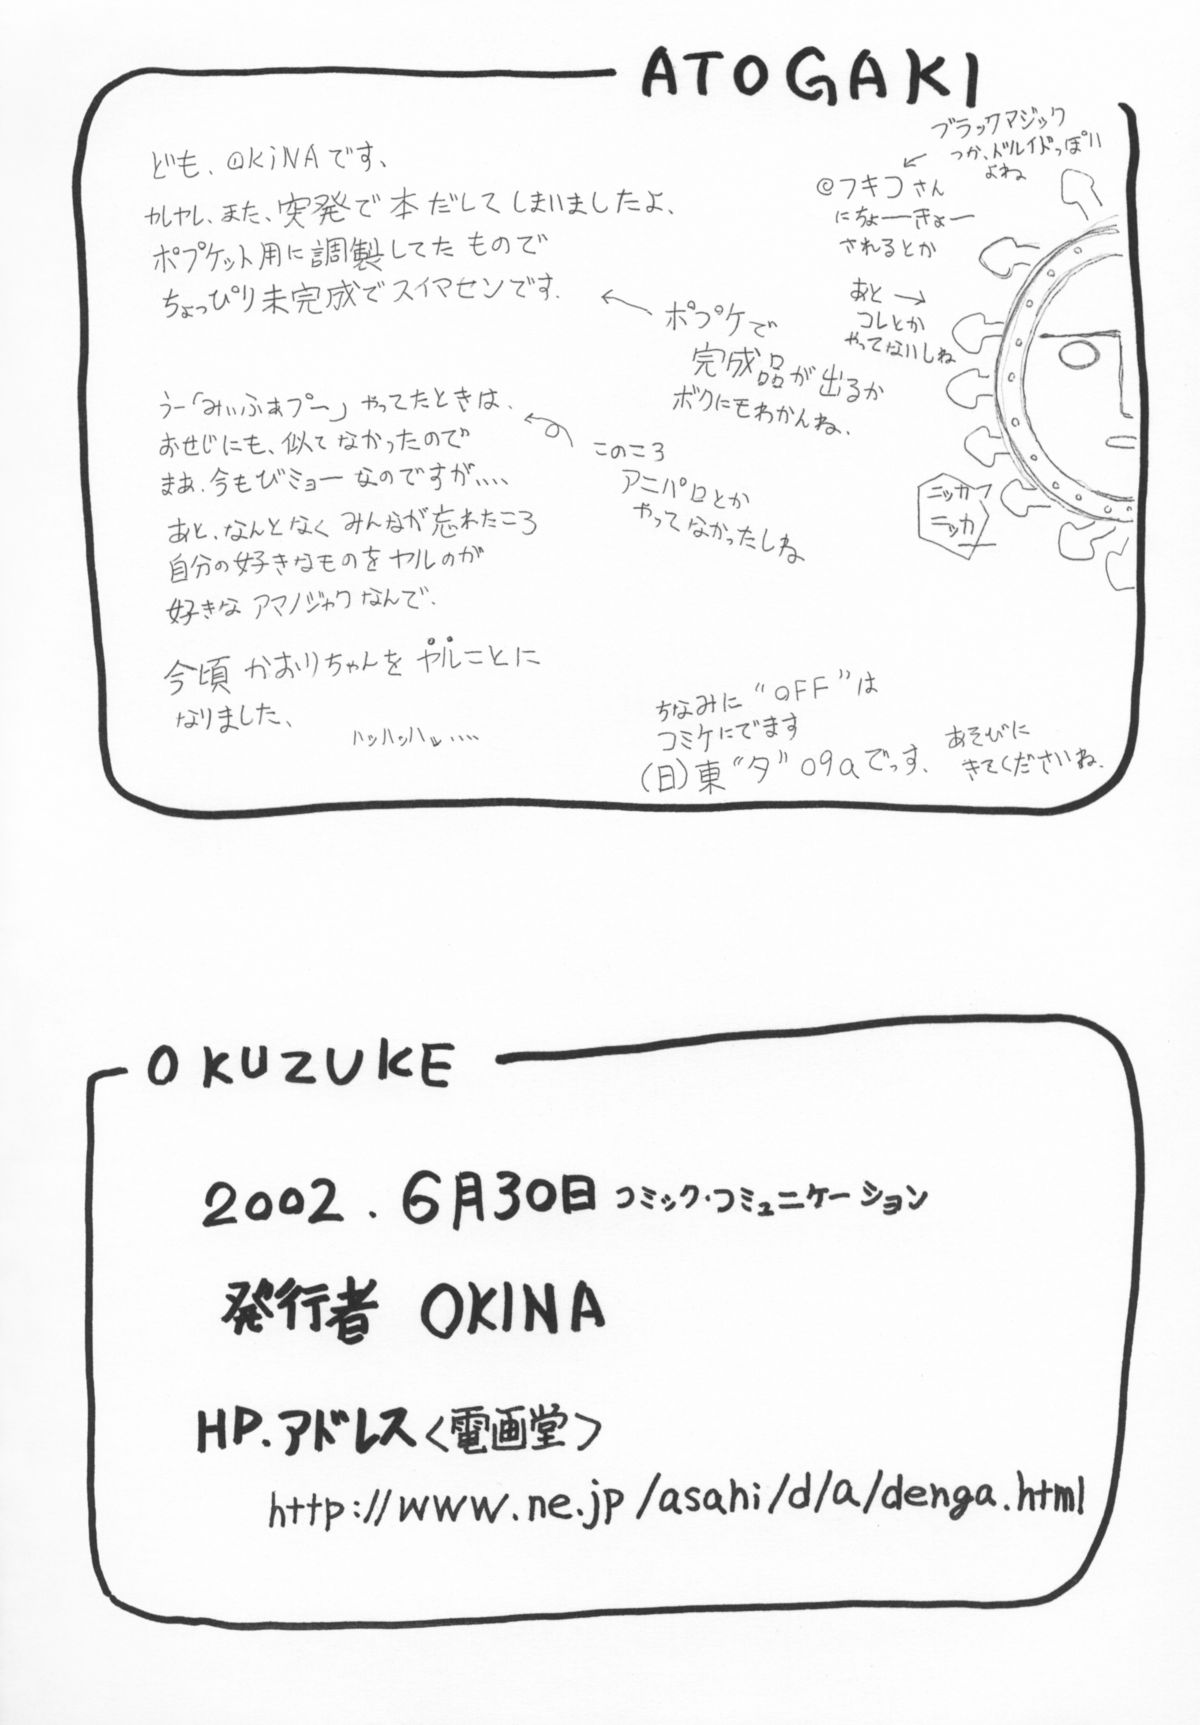 (コミコミ3) [Okina Flying Factory (OKINA)] Witch's Garden (ふしぎ魔法ファンファンファーマシィー)